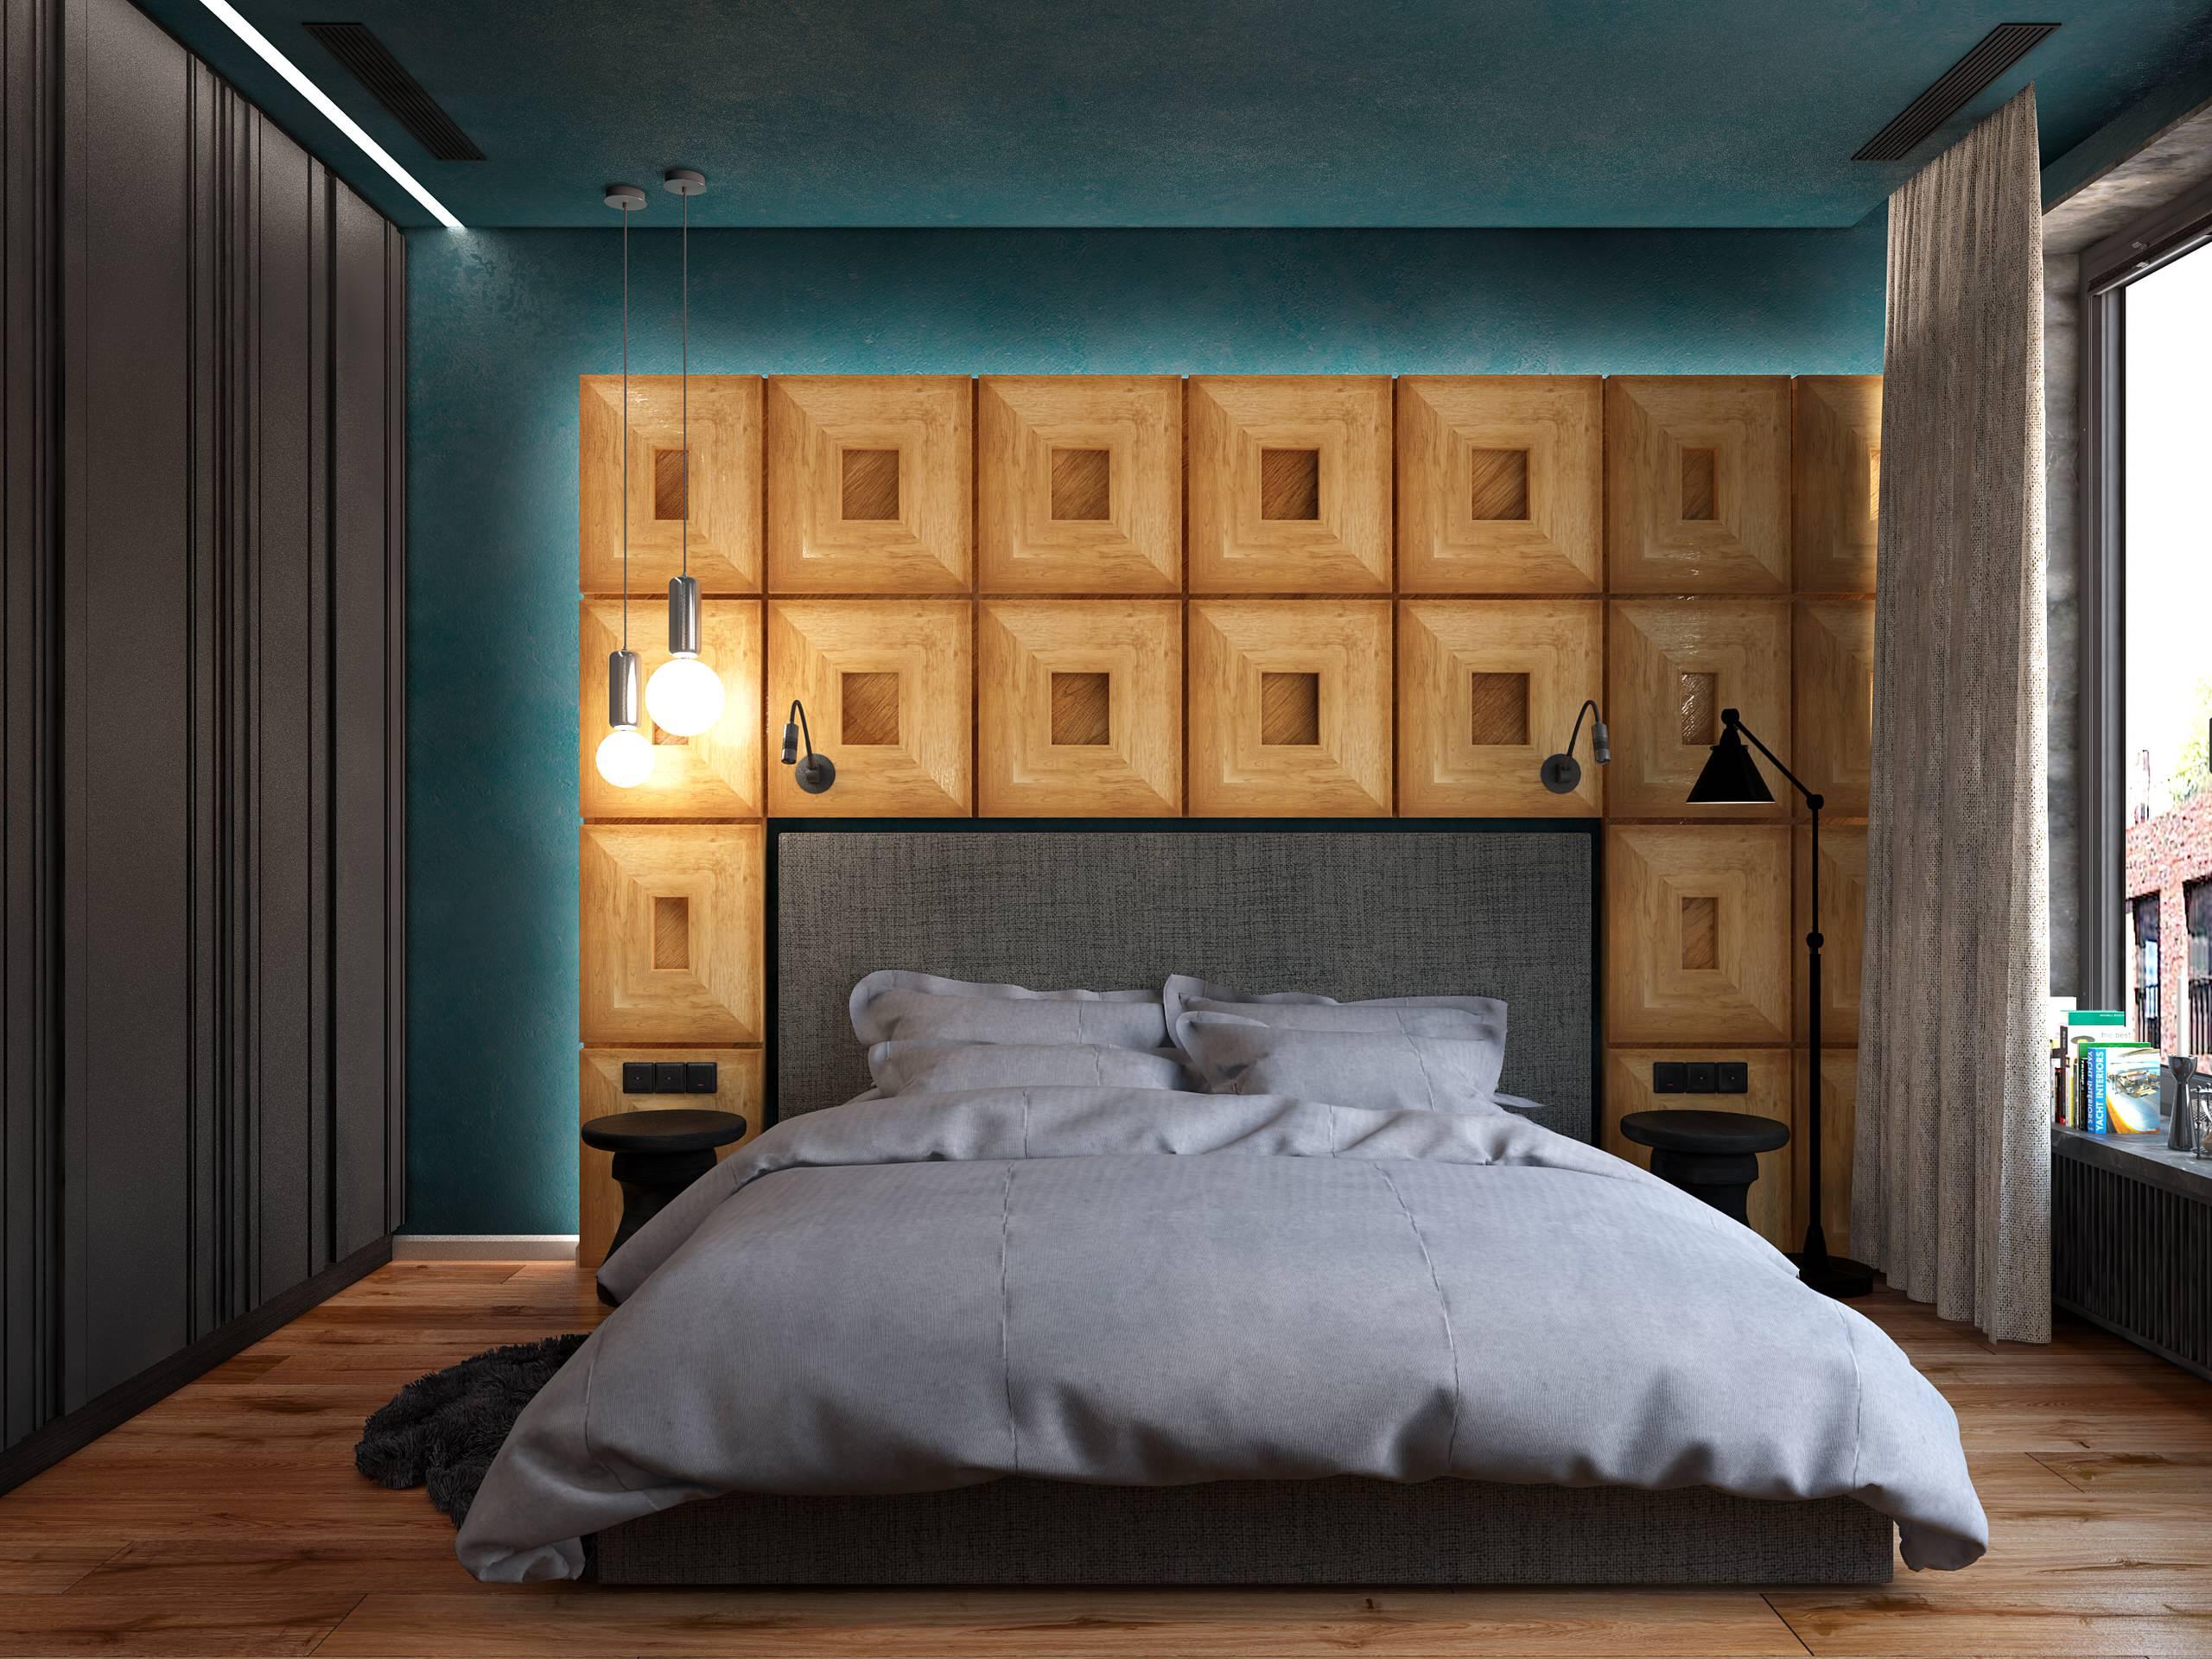 Интерьер спальни с бра над кроватью, светильниками над кроватью и шкафом над кроватью в современном стиле, в стиле лофт и эко